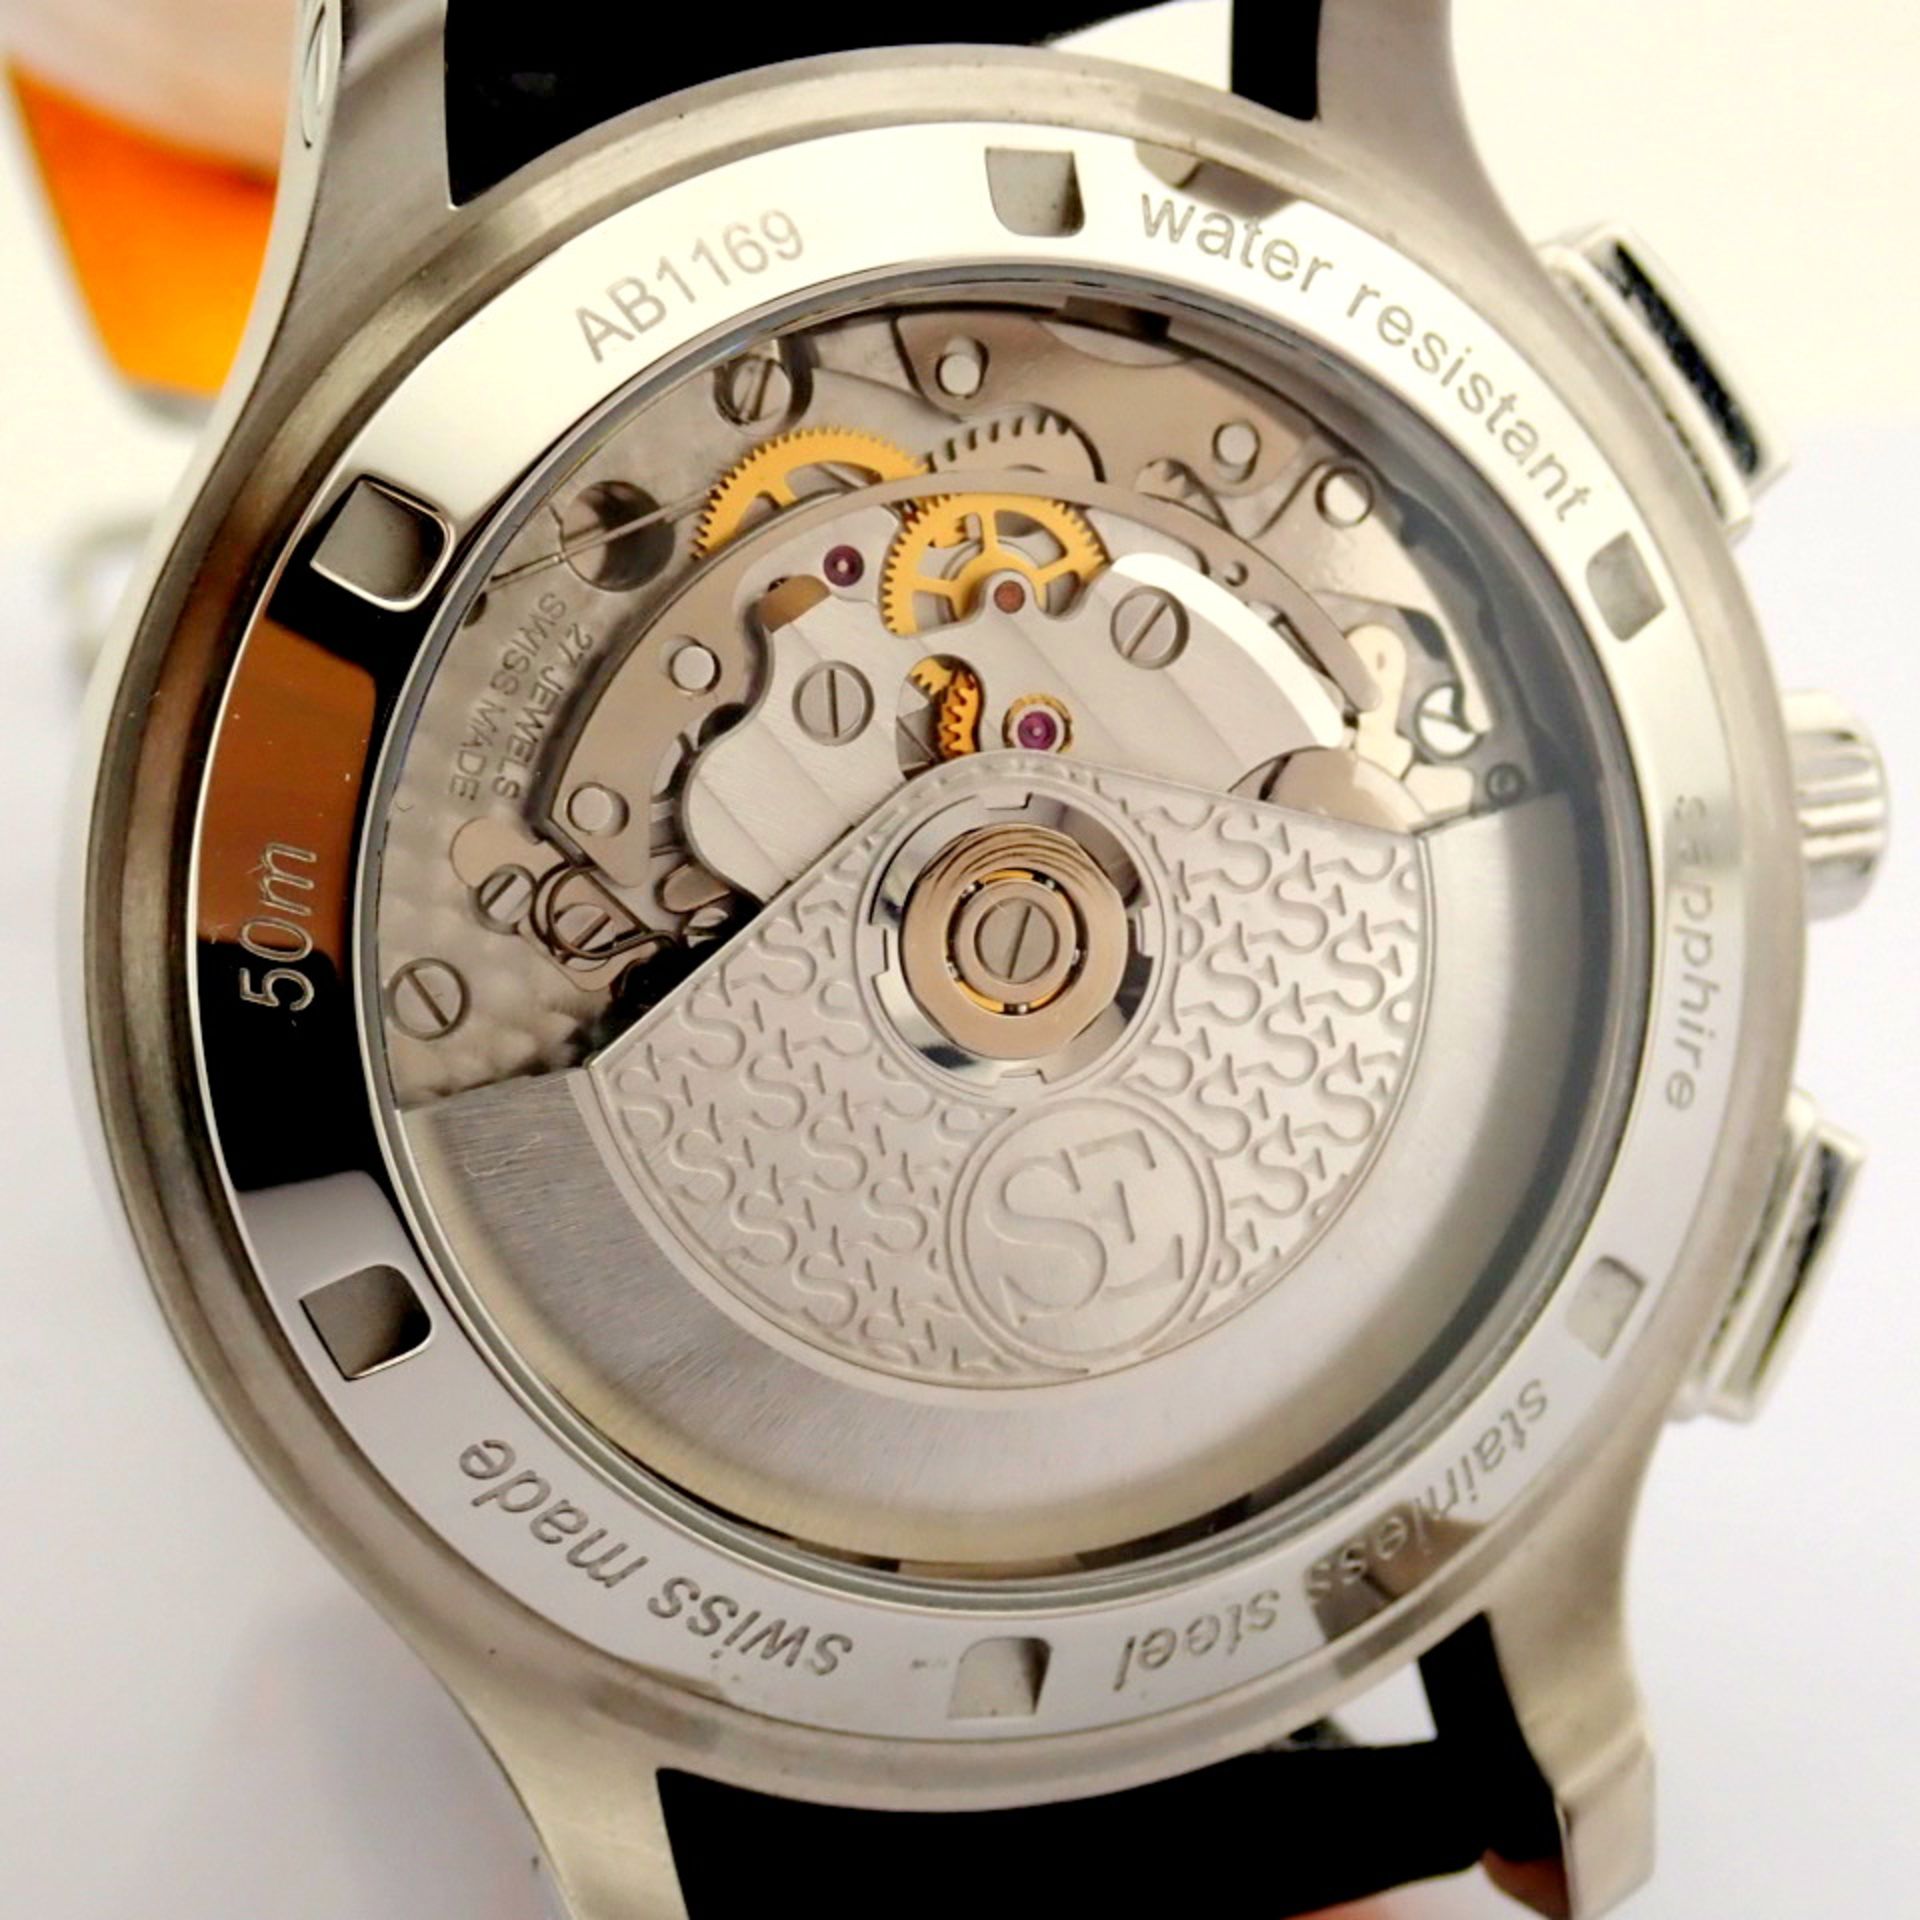 Schwarz Etienne / 1902 GMT Chronograph - Gentlmen's Steel Wrist Watch - Image 12 of 12